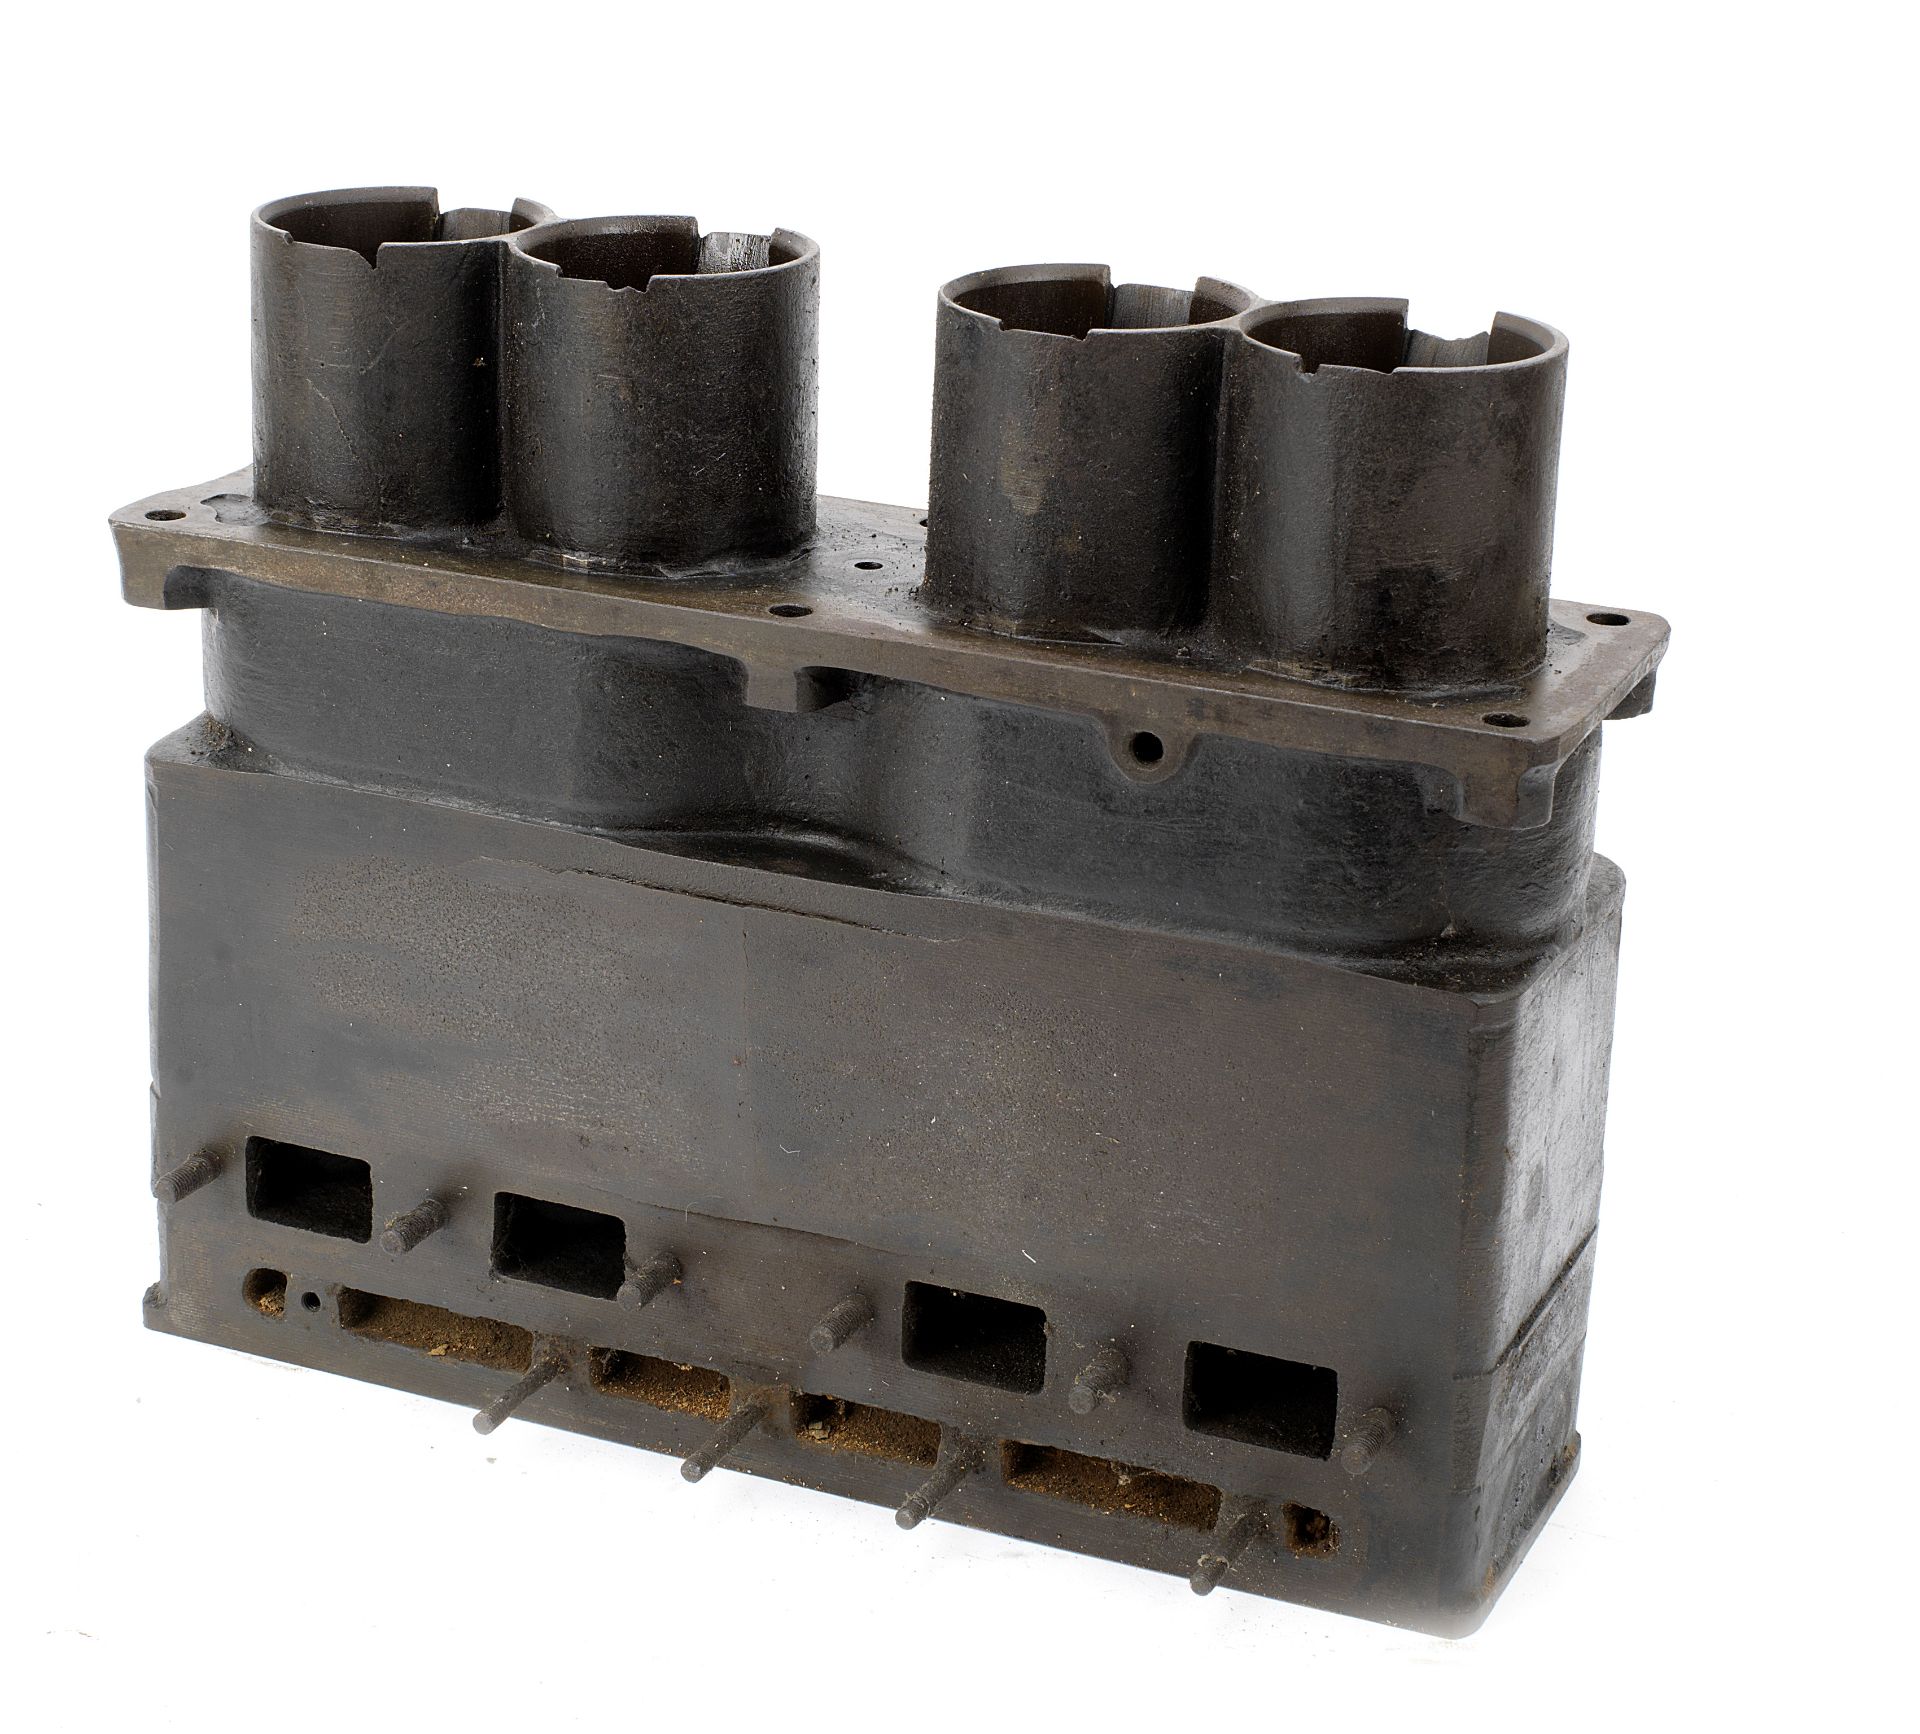 A Bugatti Brescia 16 valve engine block.